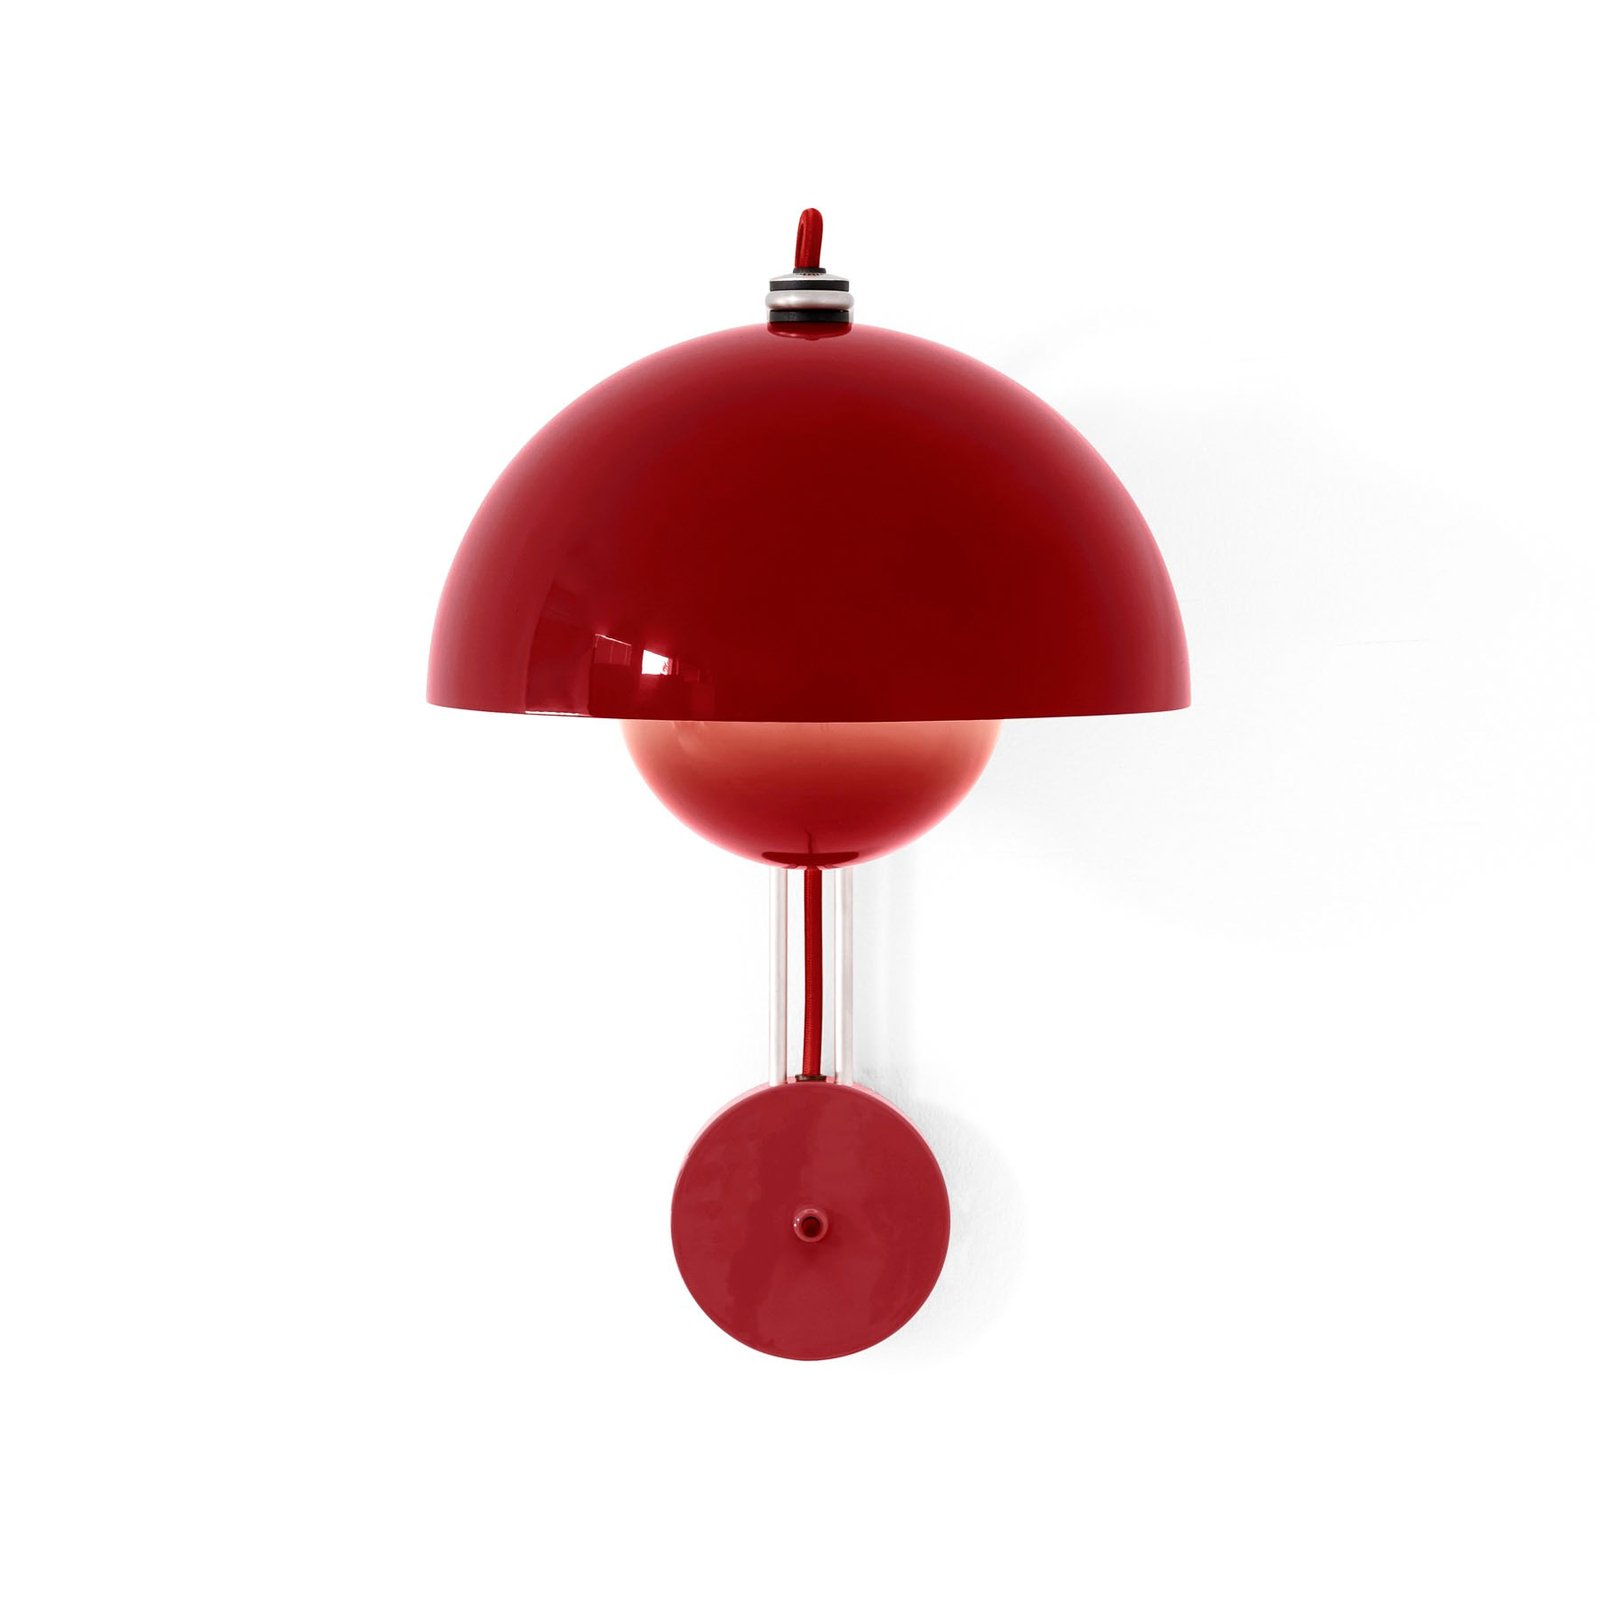 &Tradition wandlamp Flowerpot VP8, stekker, vermiljoen rood